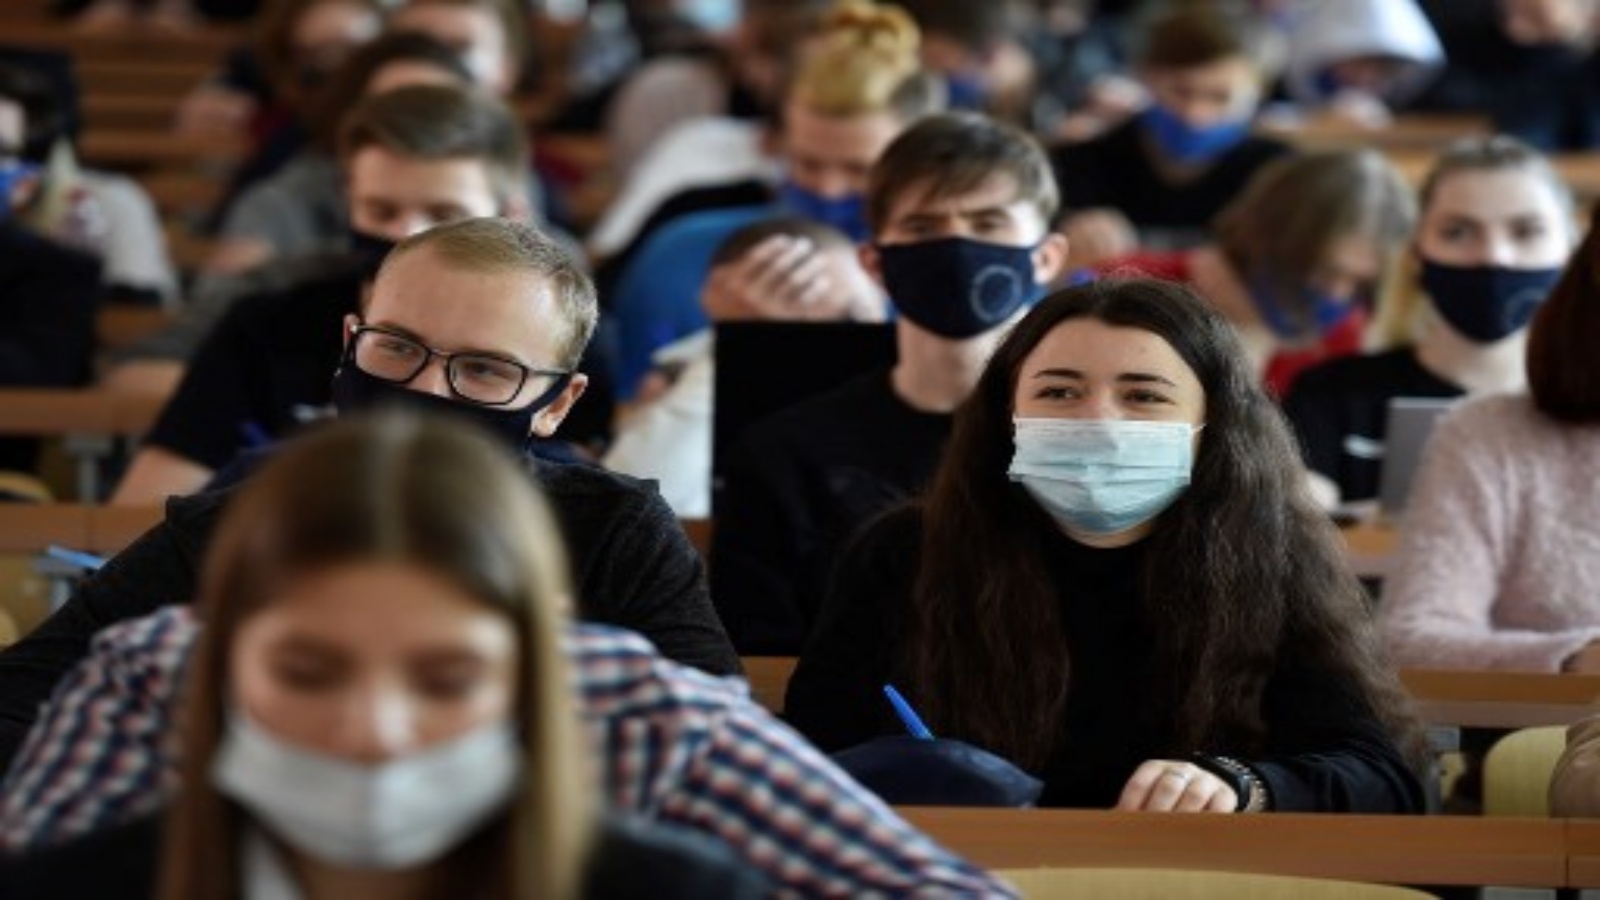 طلاب من جامعة روس يرتدون أقنعة الوجه يحضرون محاضرة في موسكو في 5 أكتوبر 2020 وسط جائحة فيروس كورونا المستمر.